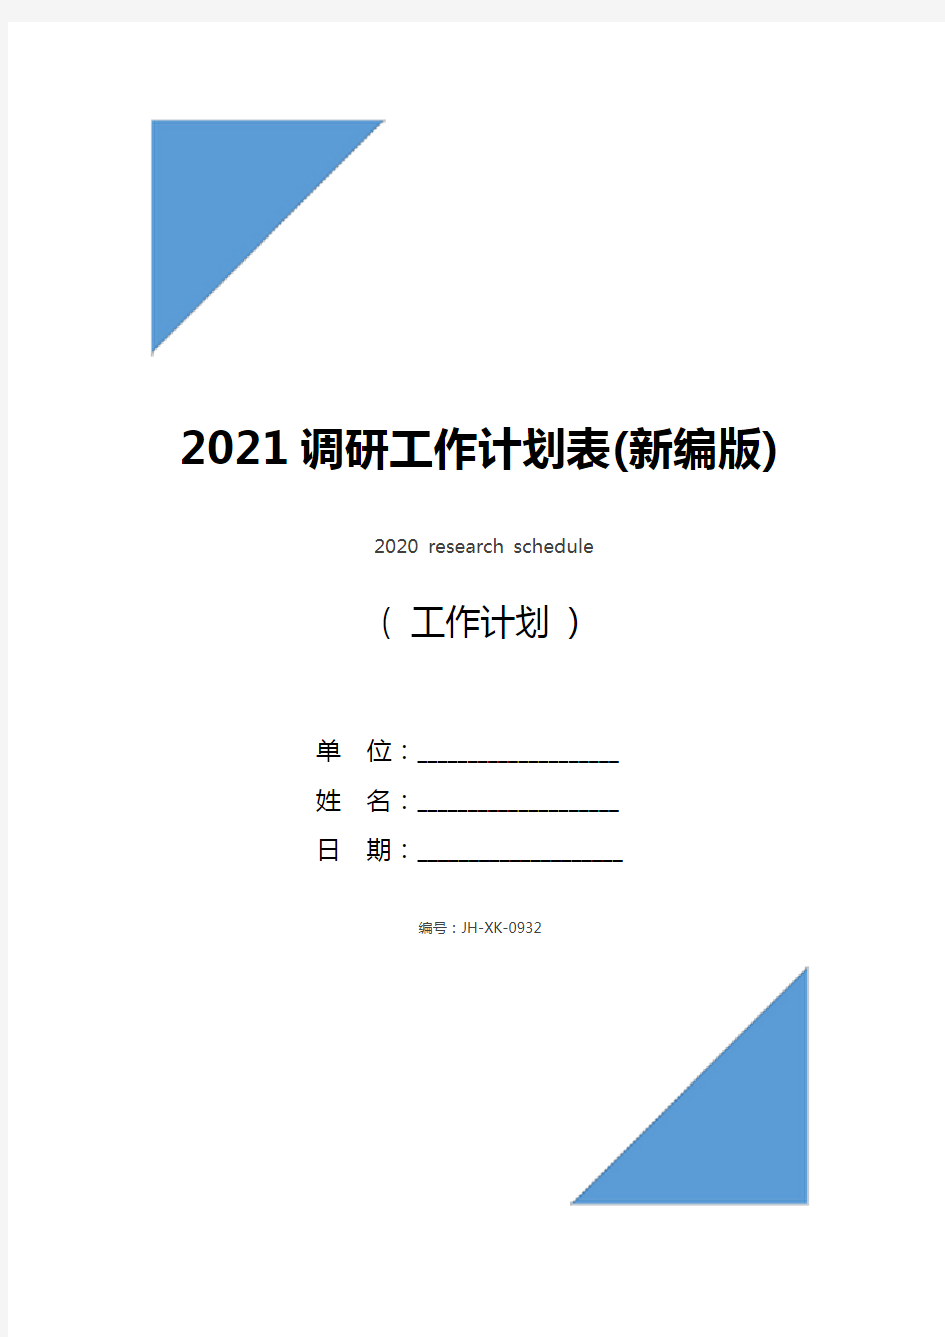 2021调研工作计划表(新编版)